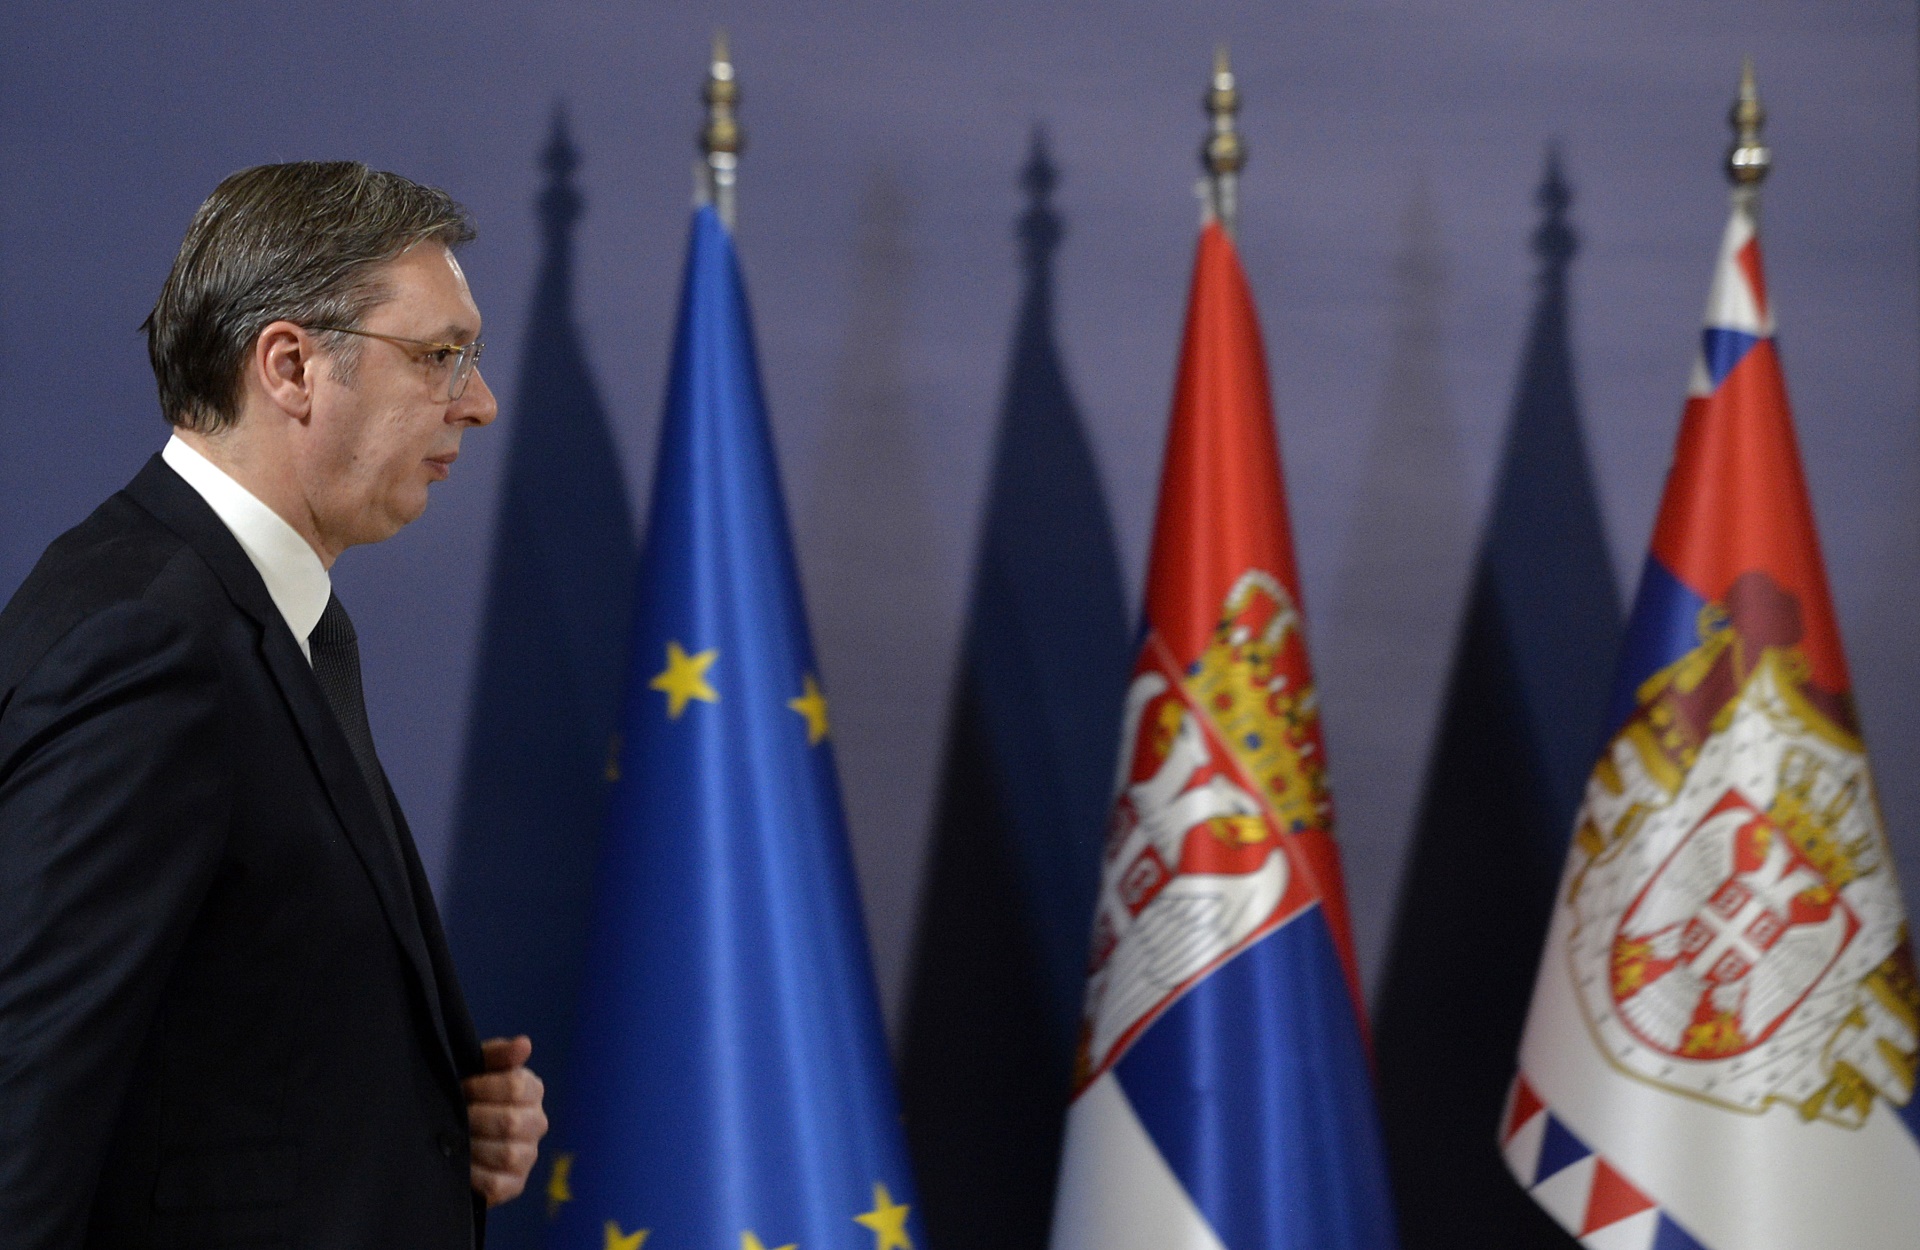 Председник Републике Србије Александар Вучић изјавио је да још нисмо добили нацрт онога што жели Европске уније, као и да је наша страна доставила свој предлог, а албанска свој.